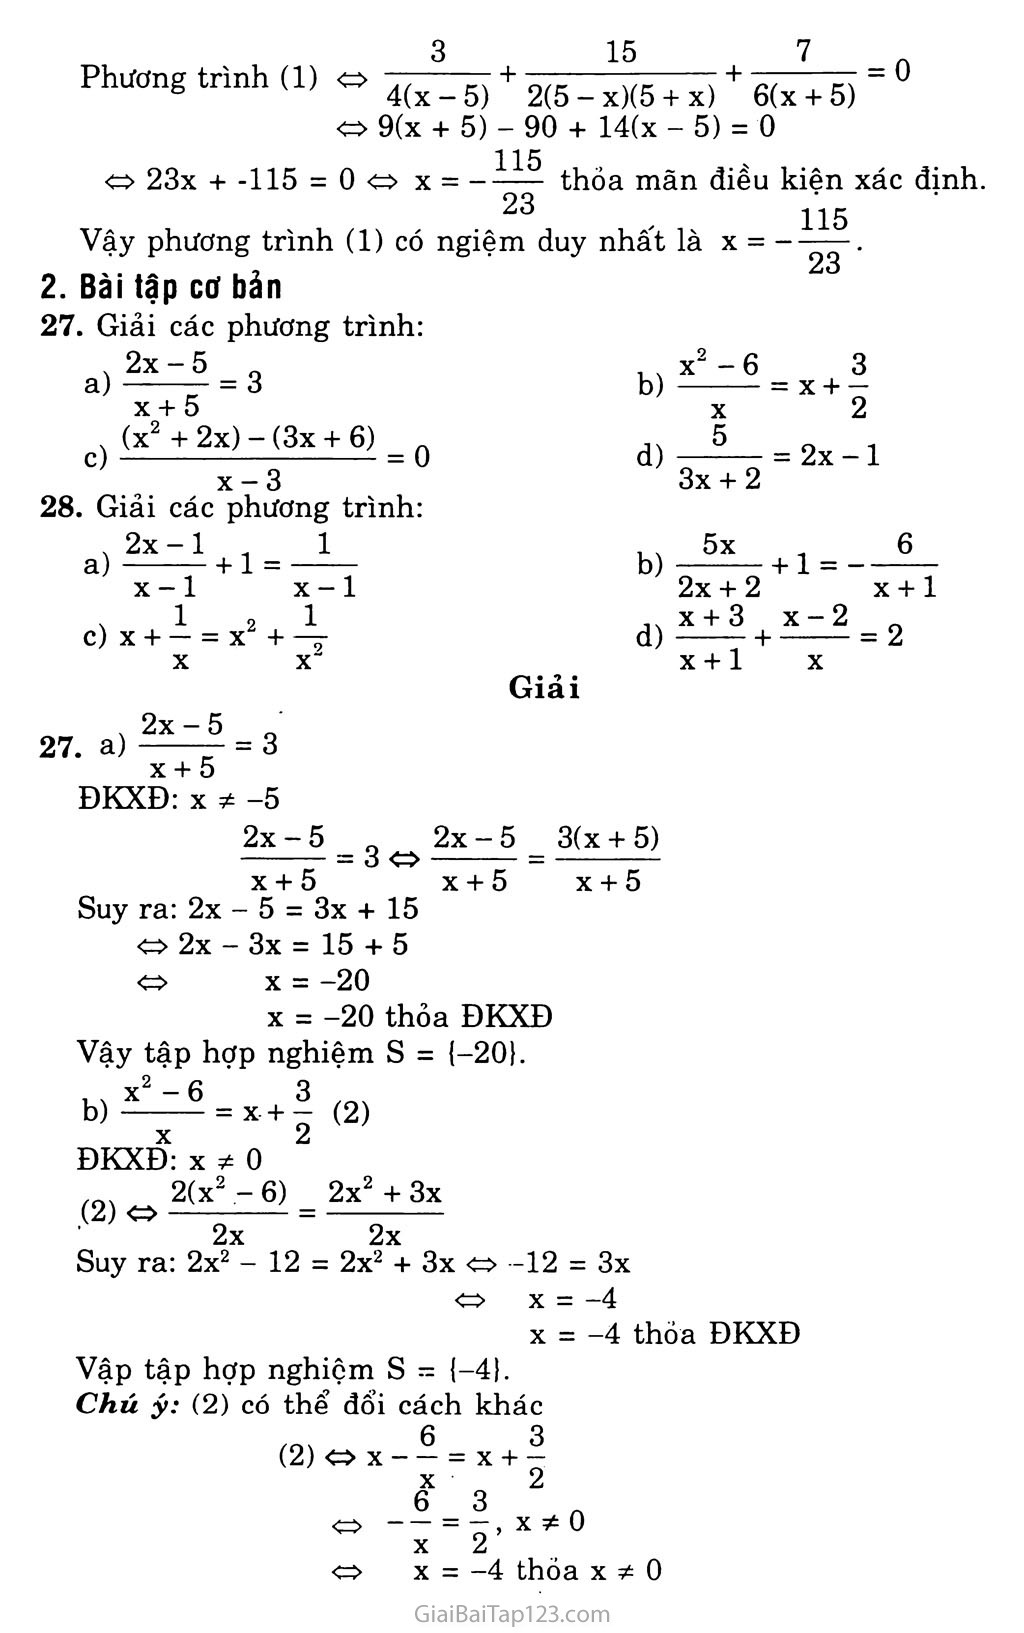 Giải bài tập Toán lớp 8: Bài 5. Phương trình chứa ẩn ở mẫu